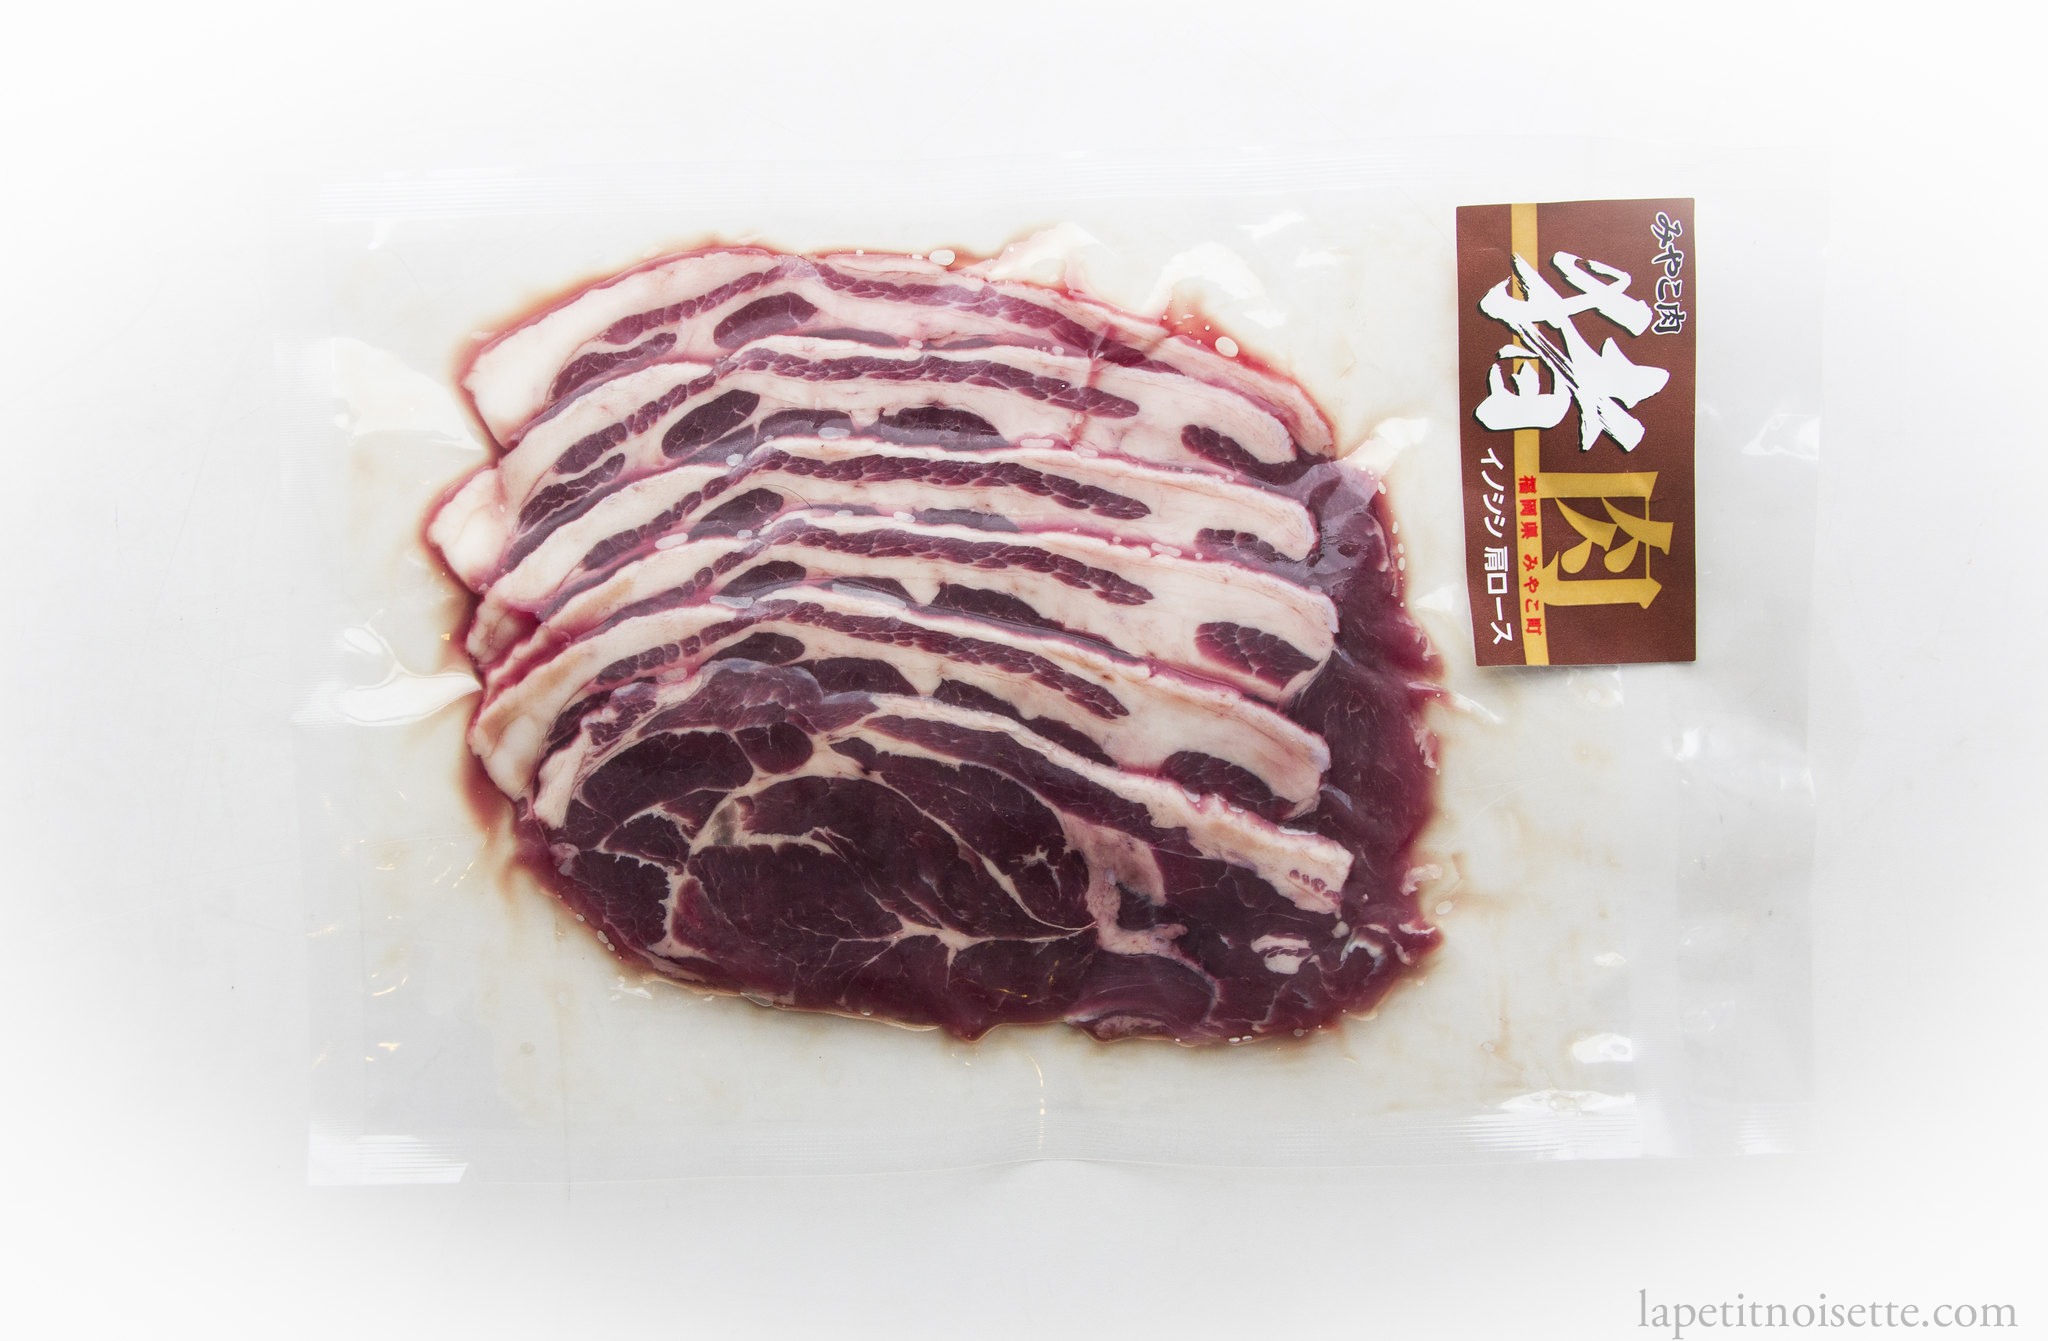 Wild boar meat for sale in Japan.